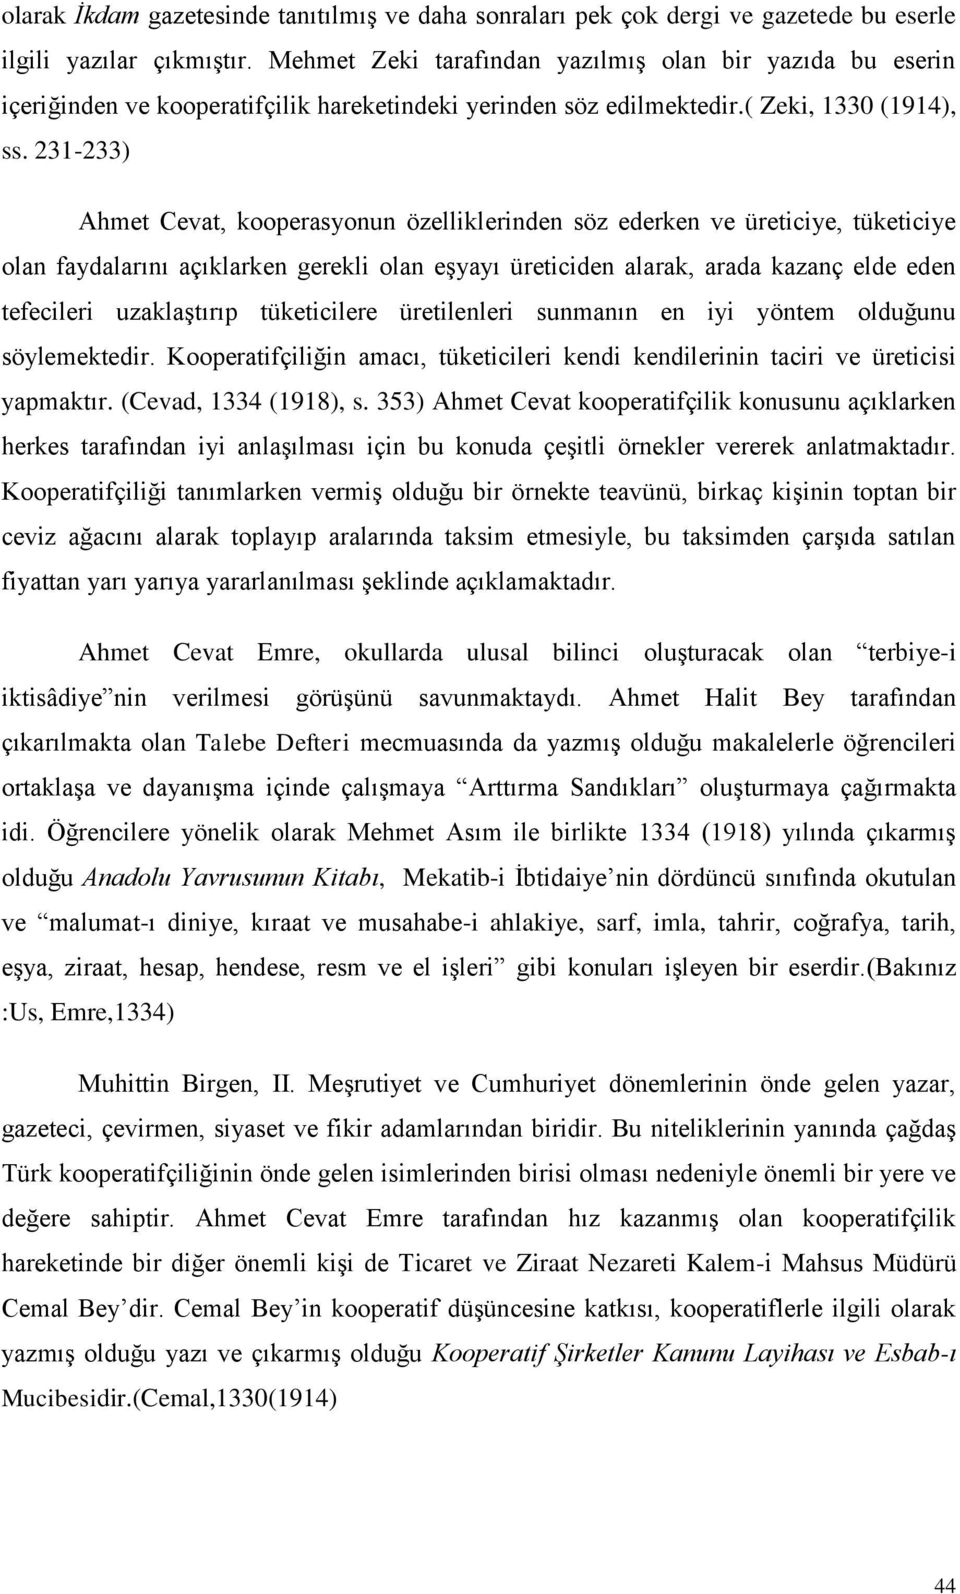 231-233) Ahmet Cevat, kooperasyonun özelliklerinden söz ederken ve üreticiye, tüketiciye olan faydalarını açıklarken gerekli olan eģyayı üreticiden alarak, arada kazanç elde eden tefecileri